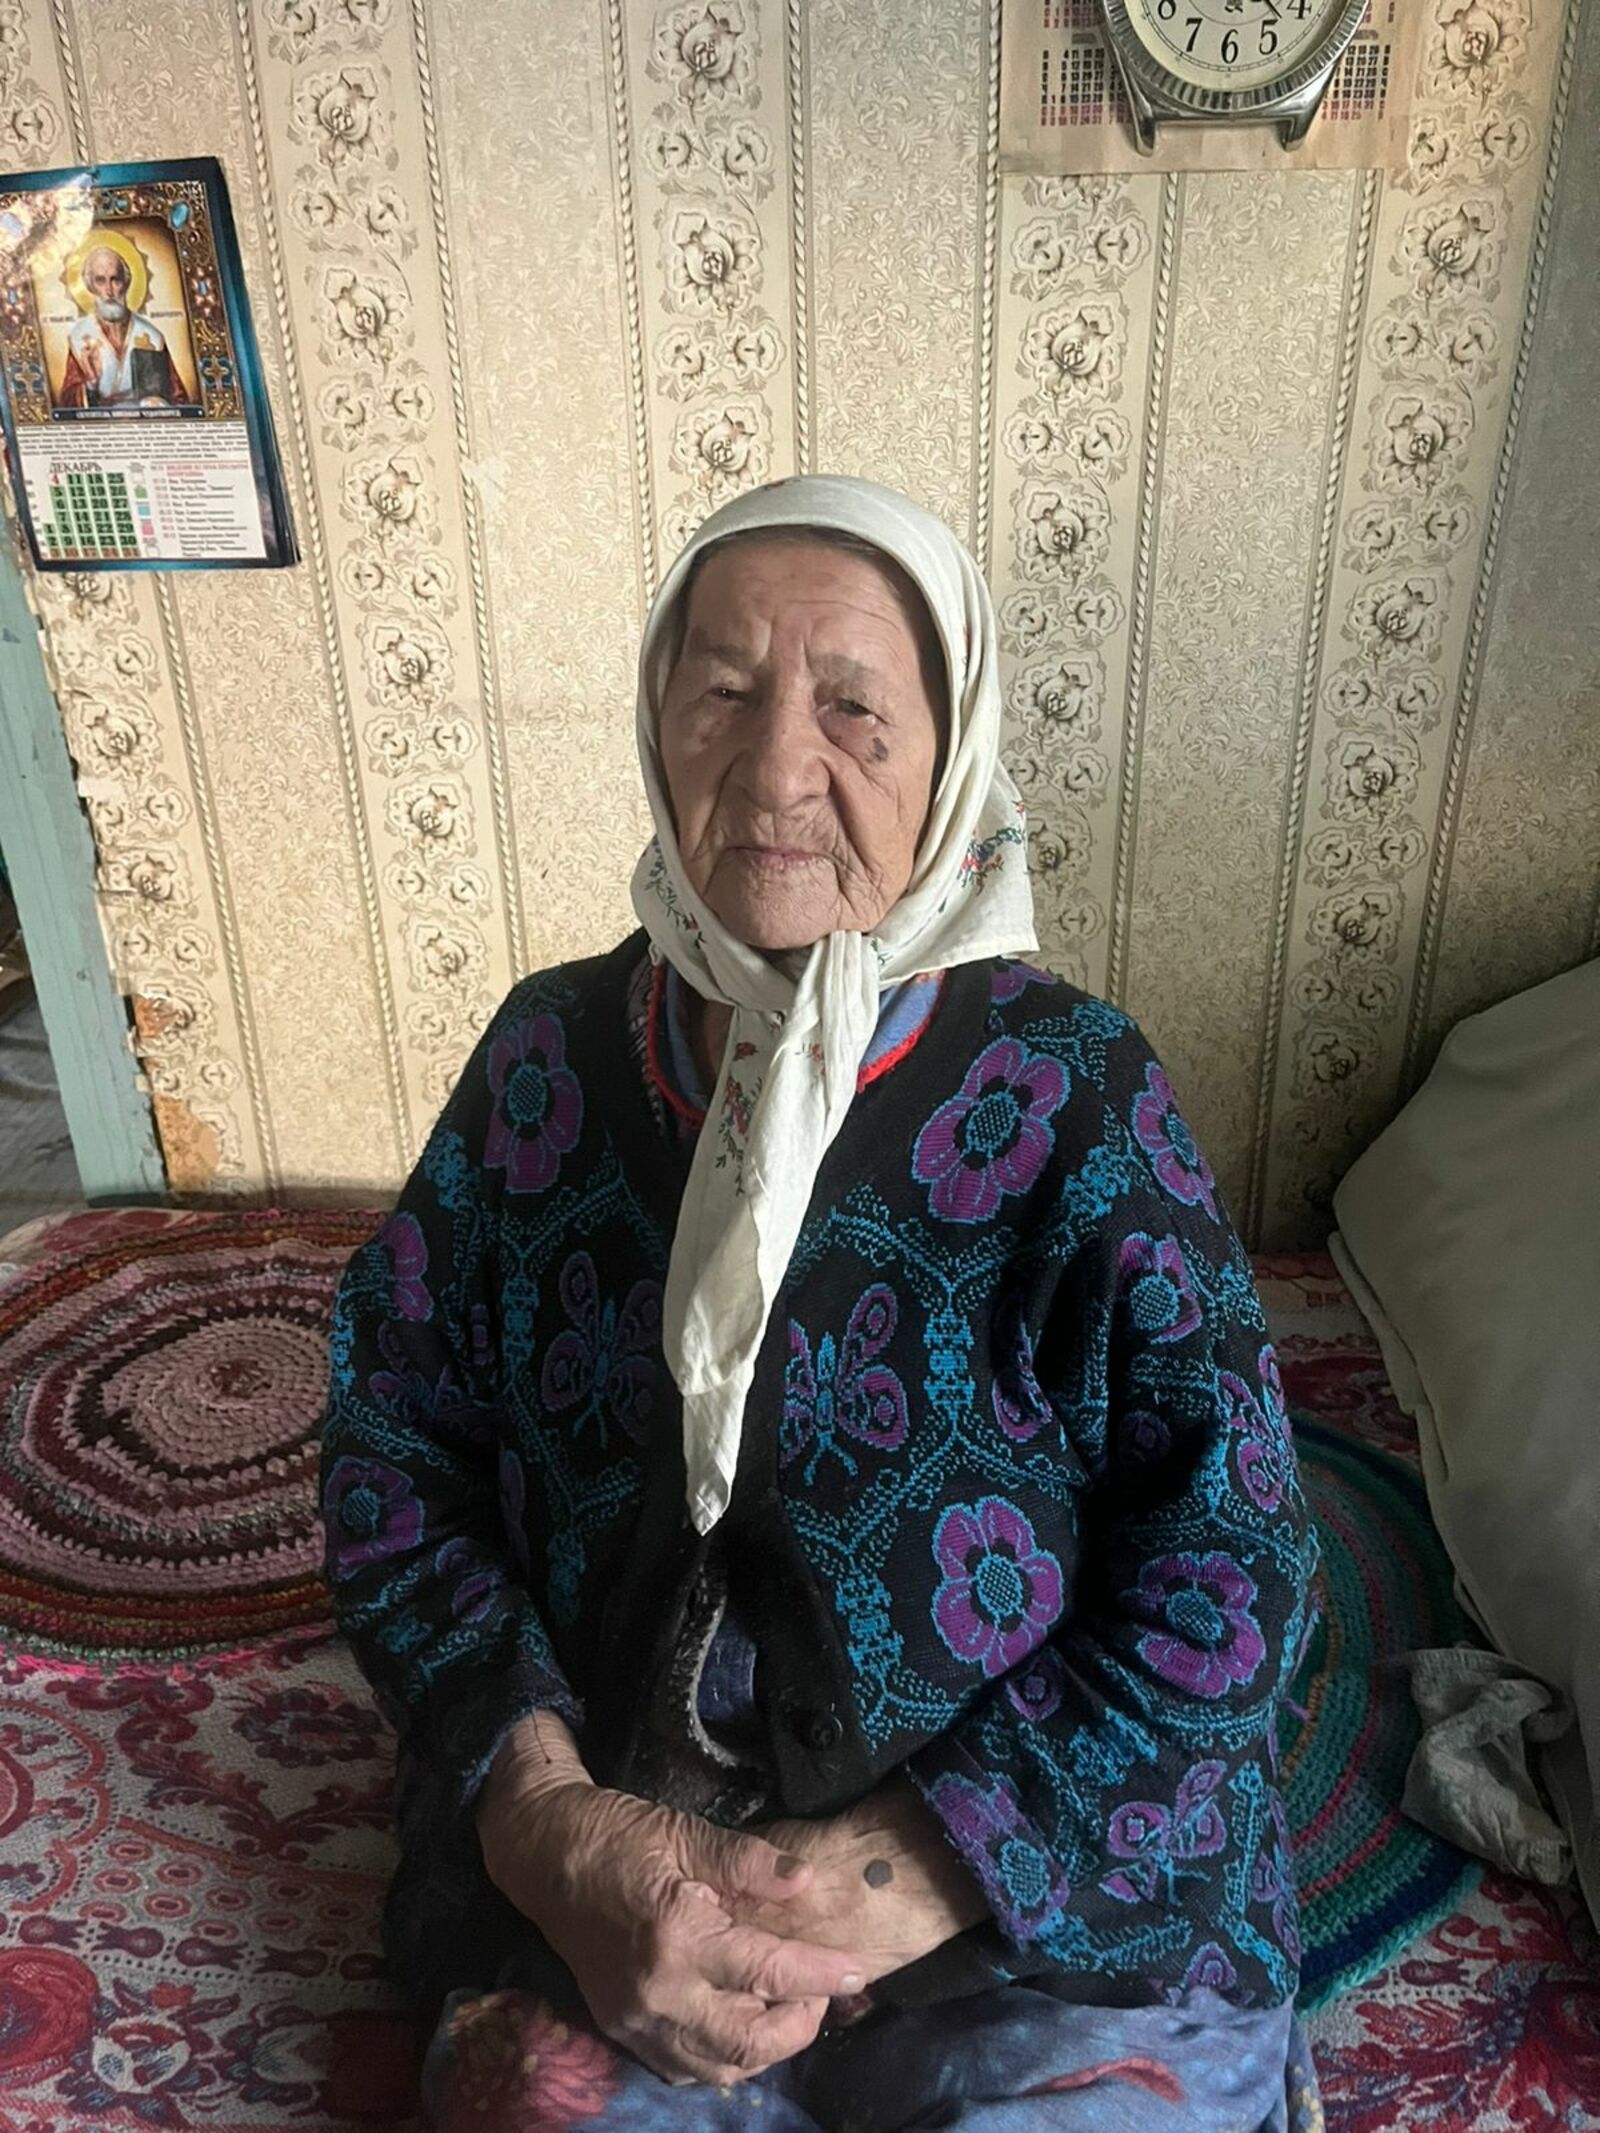 Старейшей жительнице села Михайловка Пелагее Николаевне Леонтьевой 101 год